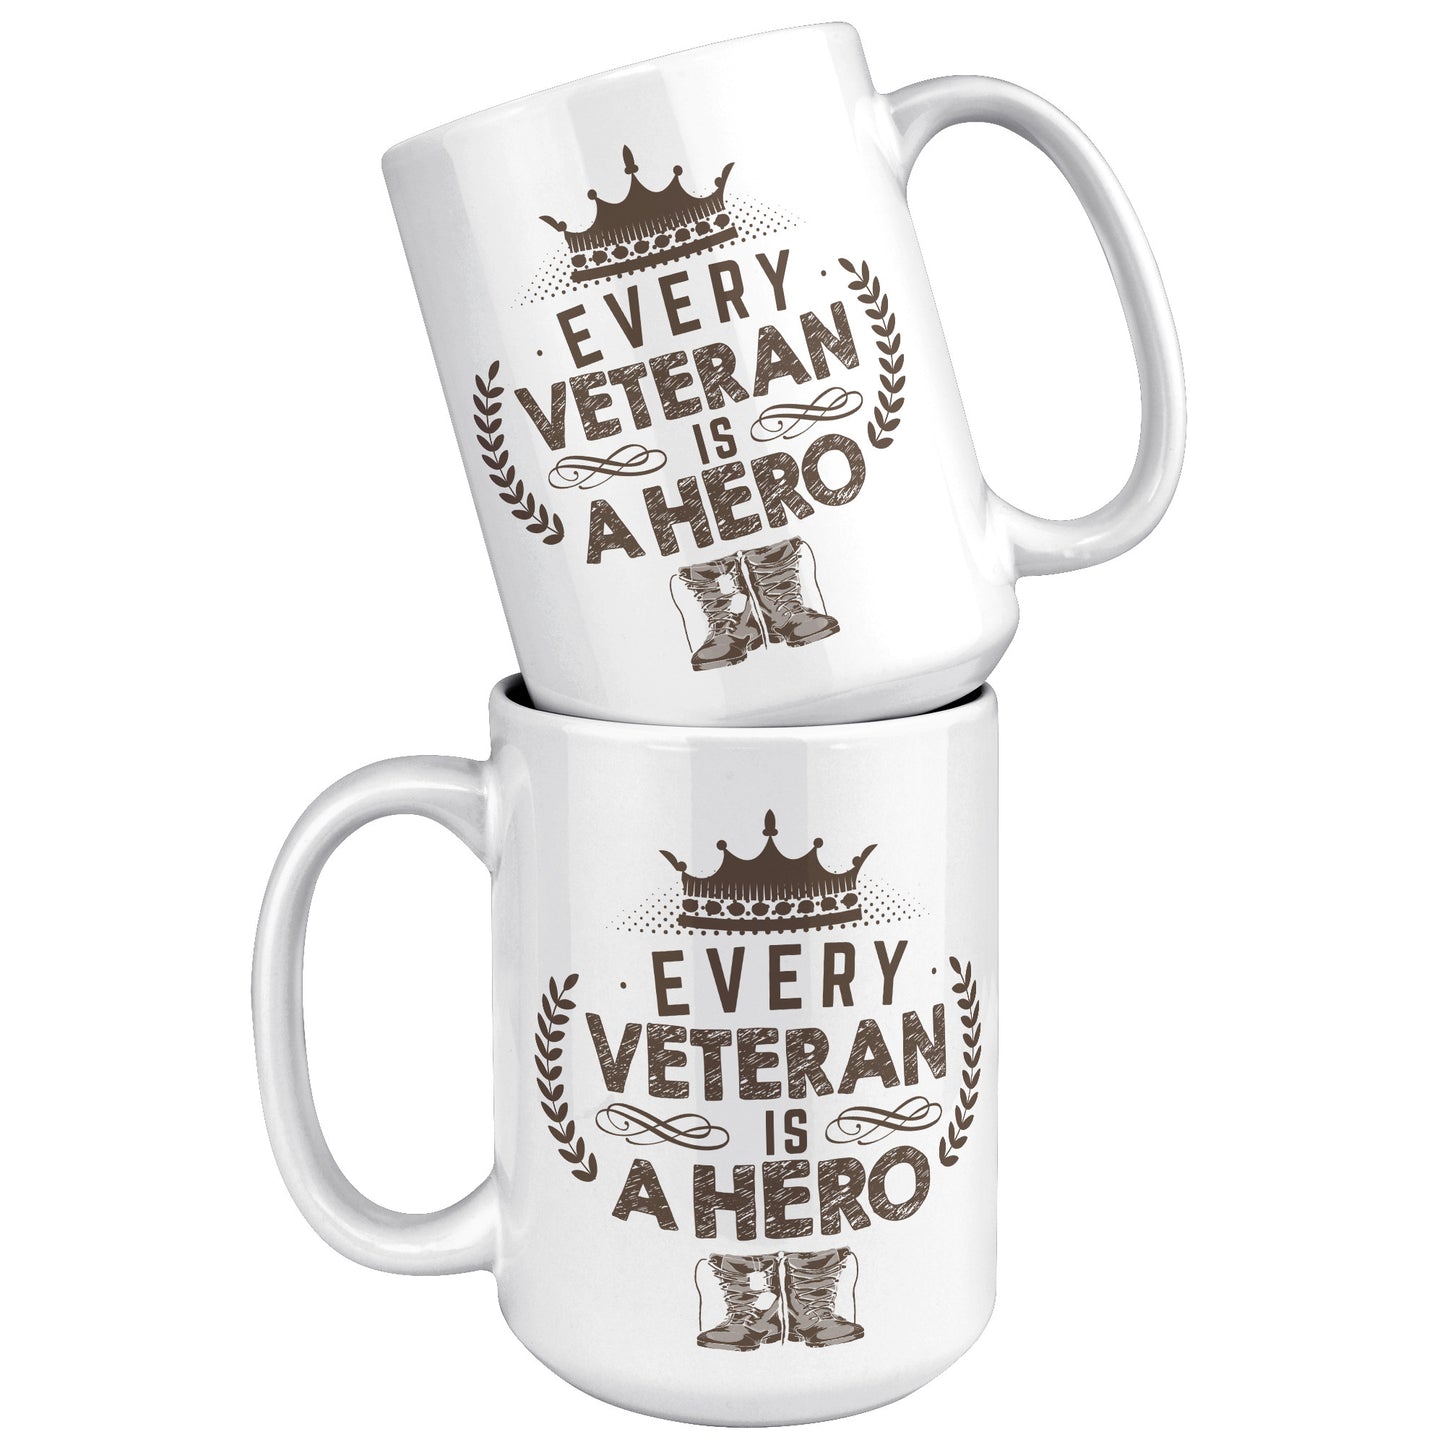 Every Veteran is a Hero - White 11oz&1lb Mug